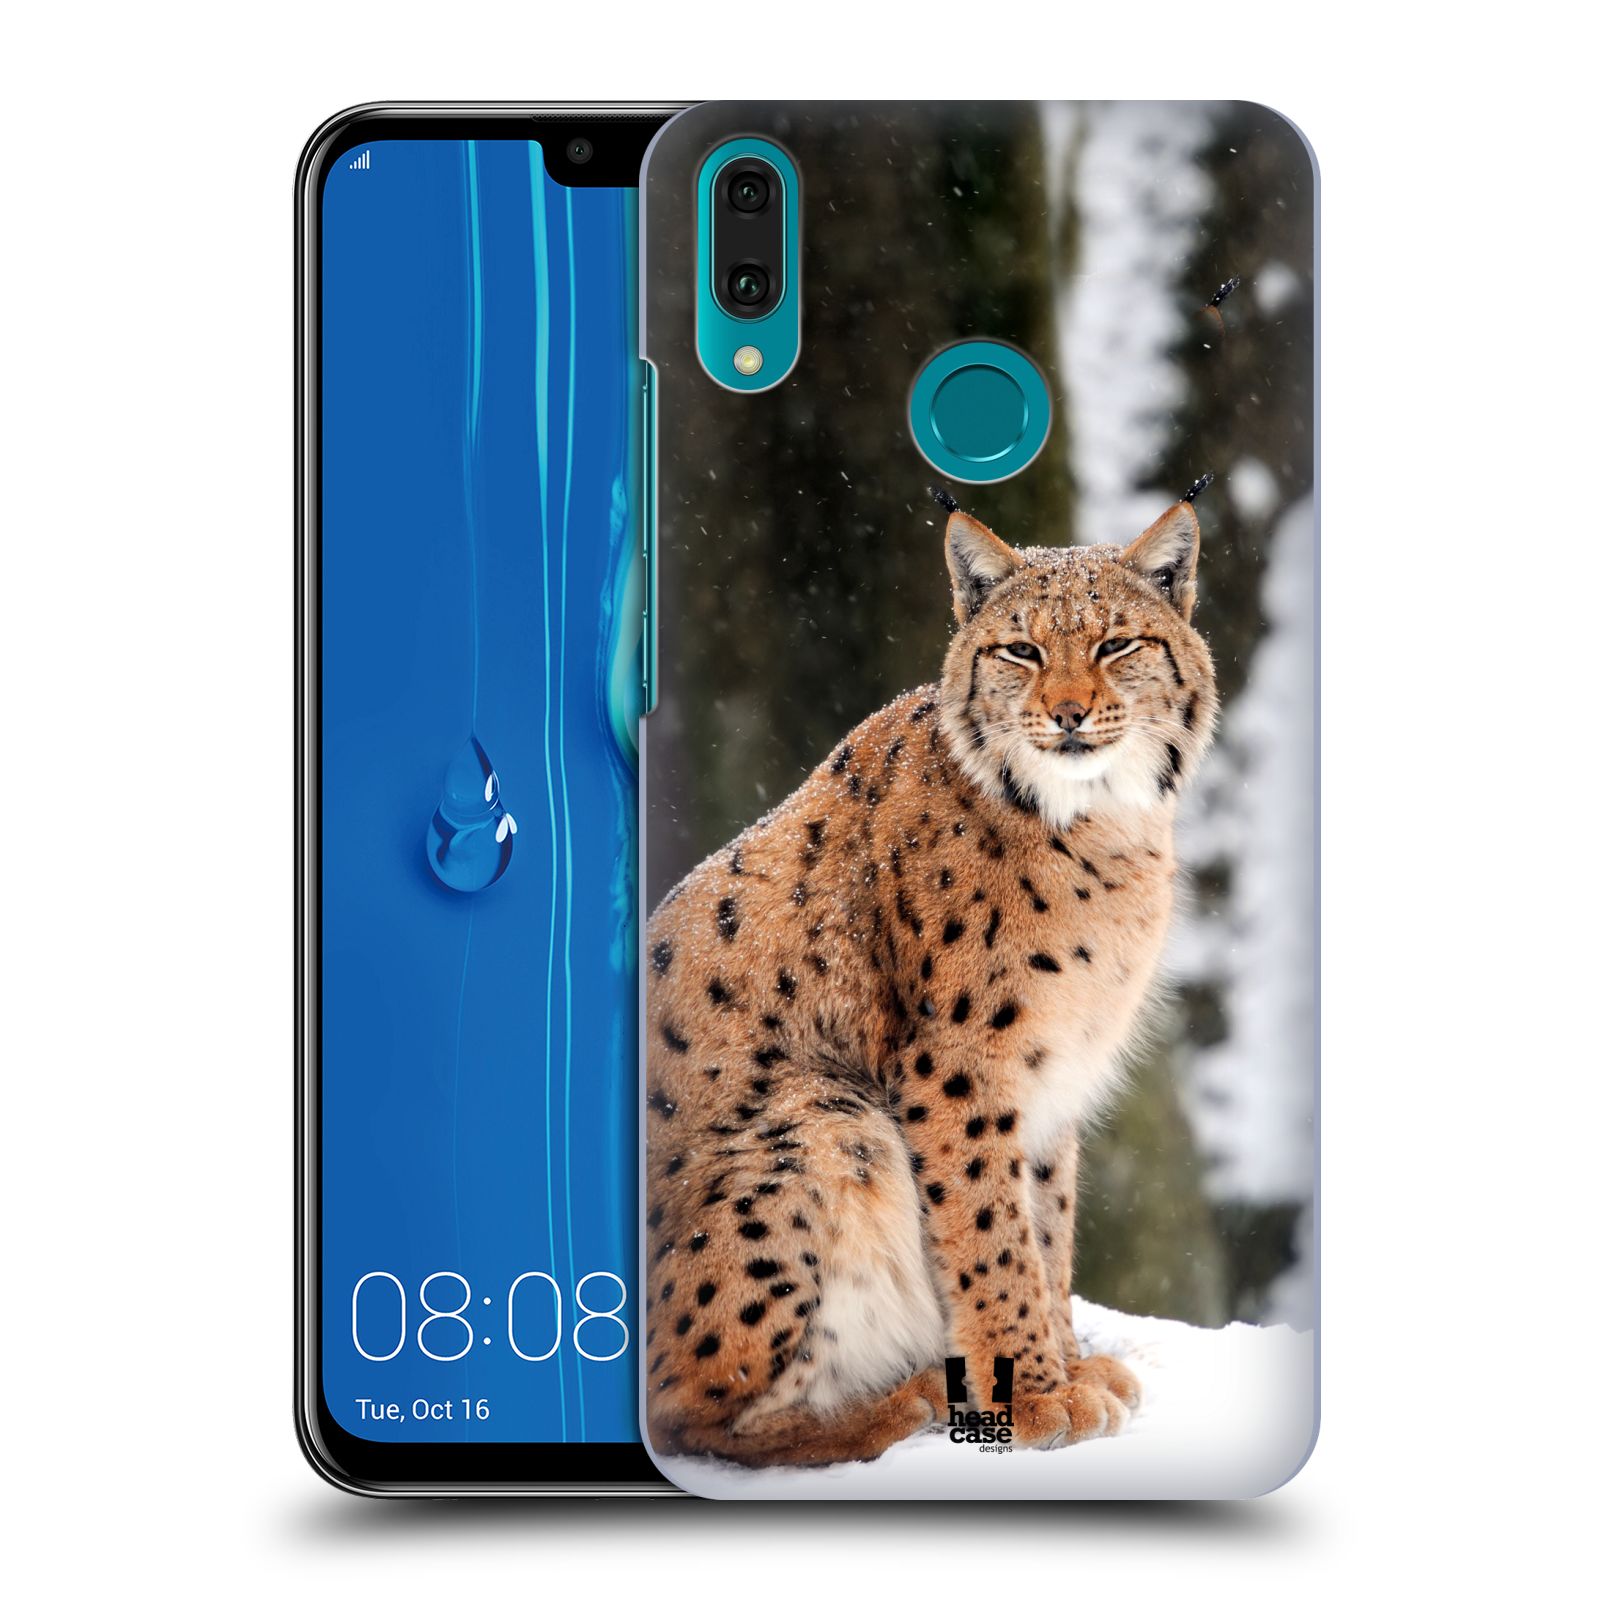 Pouzdro na mobil Huawei Y9 2019 - HEAD CASE - vzor slavná zvířata foto rys